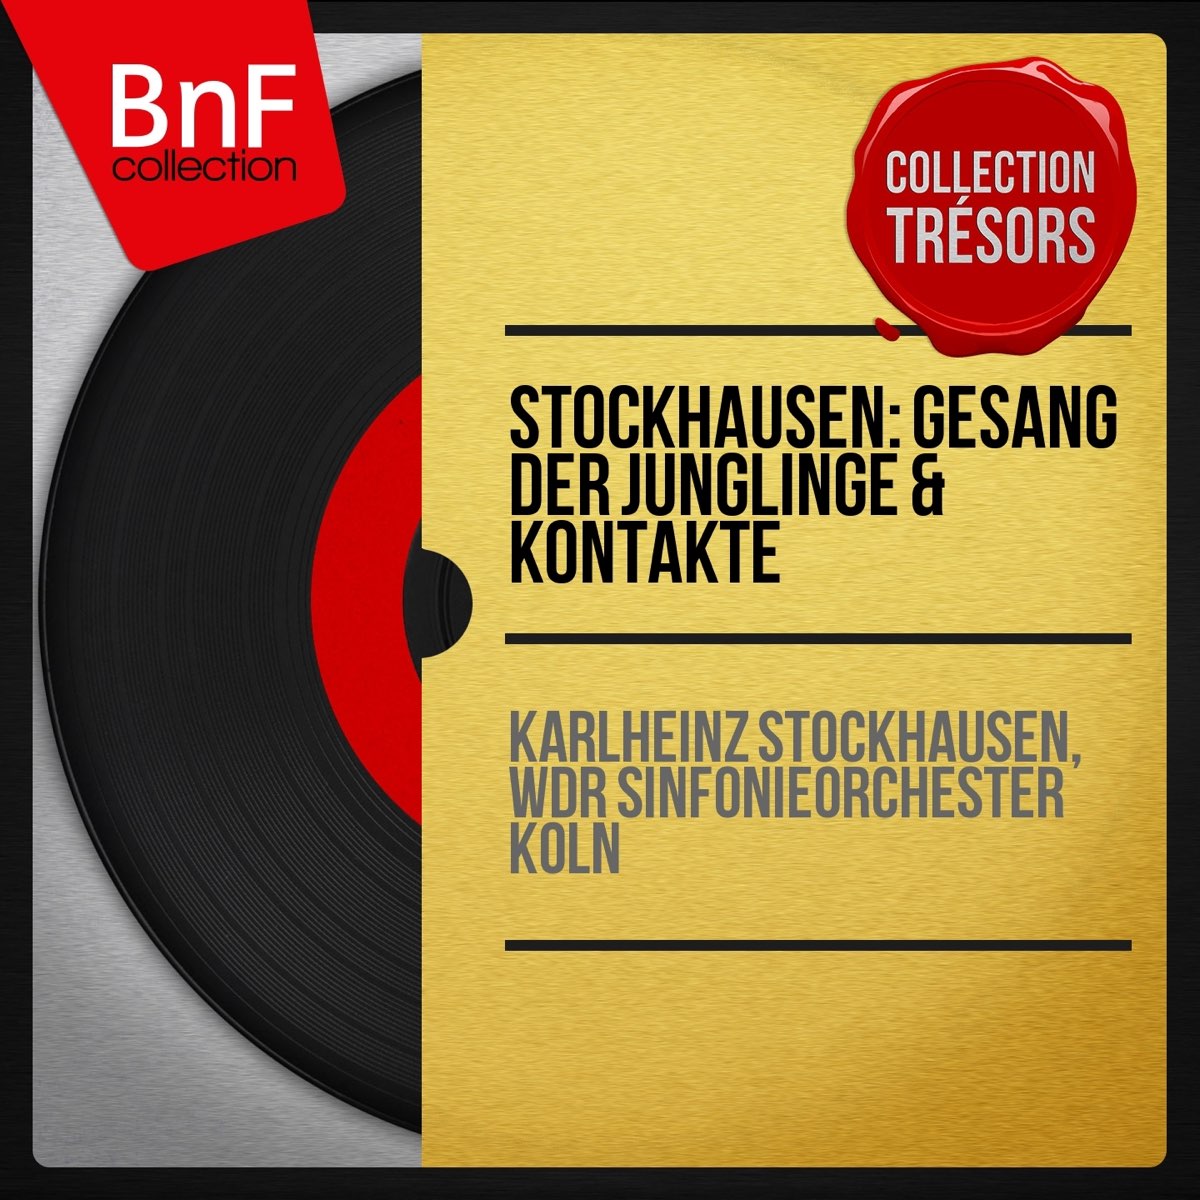 カールハインツ シュトックハウゼン ケルンwdr交響楽団の Stockhausen Gesang Der Junglinge Kontakte Stereo Version をapple Musicで